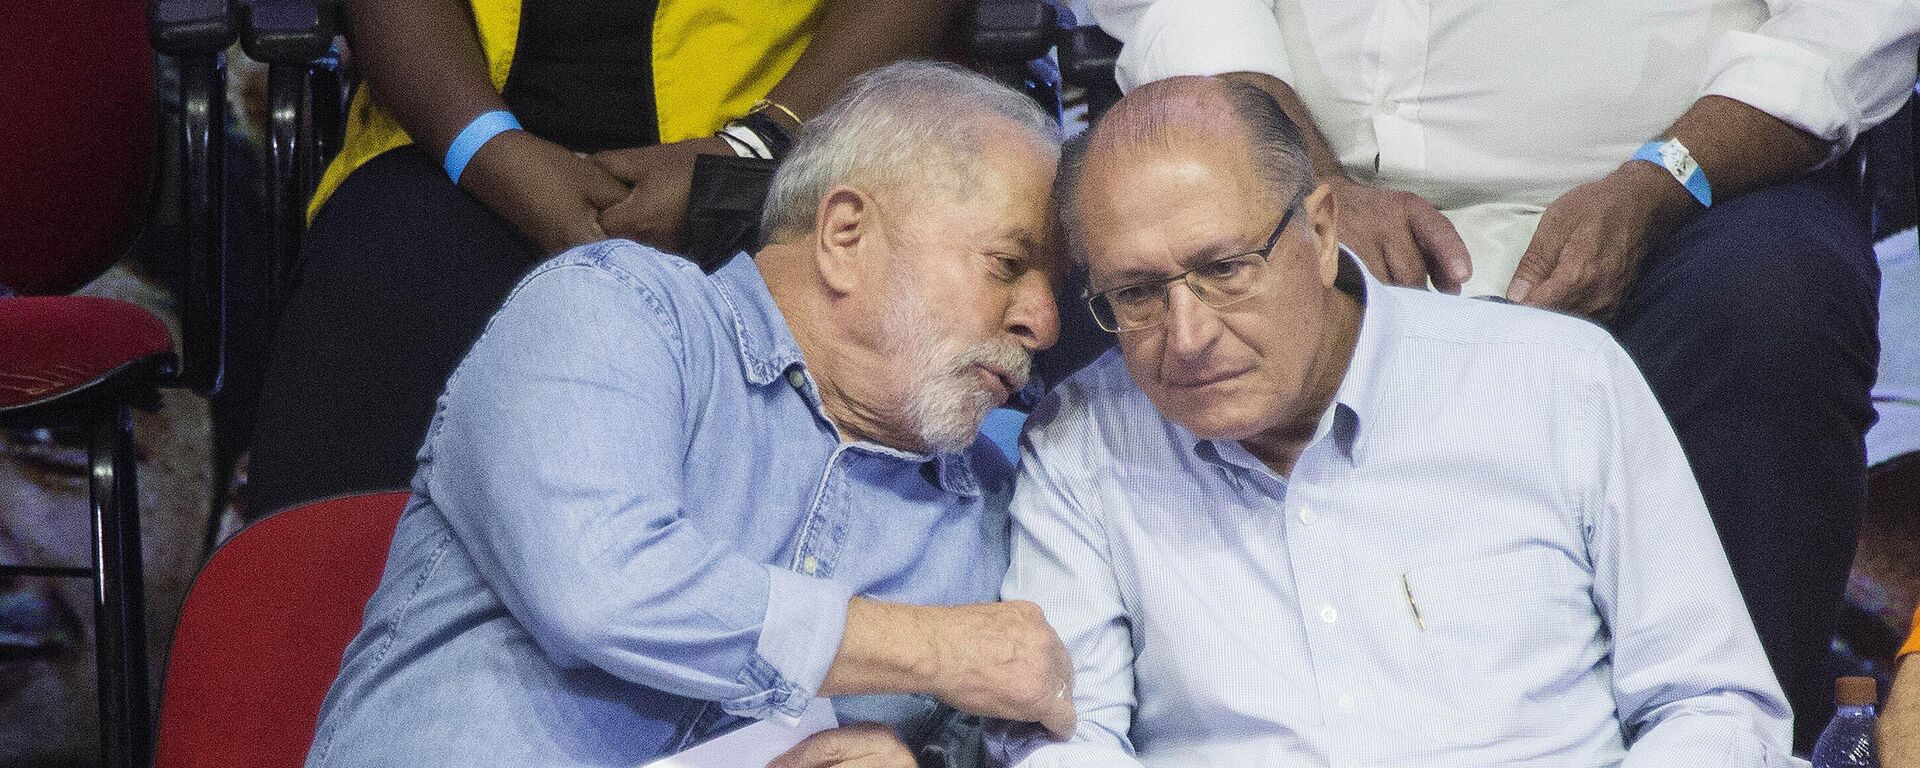 Os então candidatos à Presidência Luiz Inácio Lula da Silva (PT, à esquerda) e à Vice-Presidência Geraldo Alckmin (PSB) conversam durante encontro com sindicalistas em São Paulo, em 4 de abril de 2022 (foto de arquivo) - Sputnik Brasil, 1920, 20.07.2022